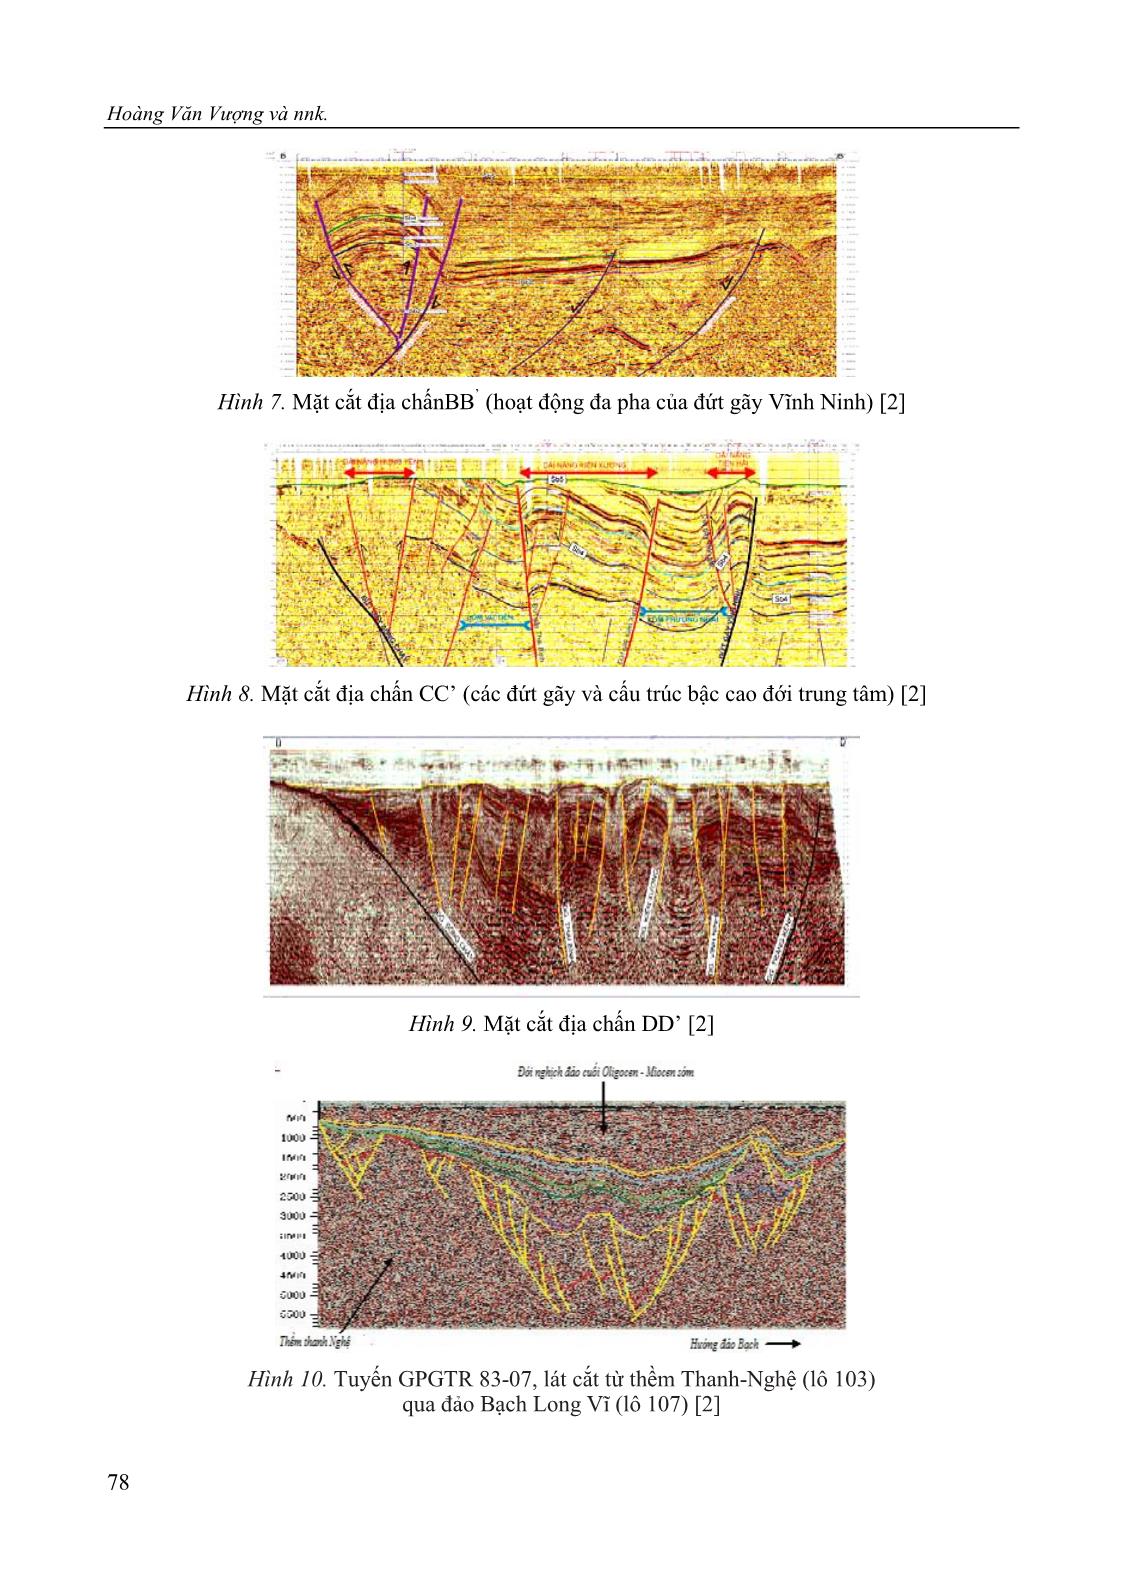 Nghiên cứu cấu trúc địa chất sâu và dự báo một số khu vực có triển vọng dầu khí thuộc dải ven biển châu thổ sông Hồng theo tài liệu địa vật lý trang 8